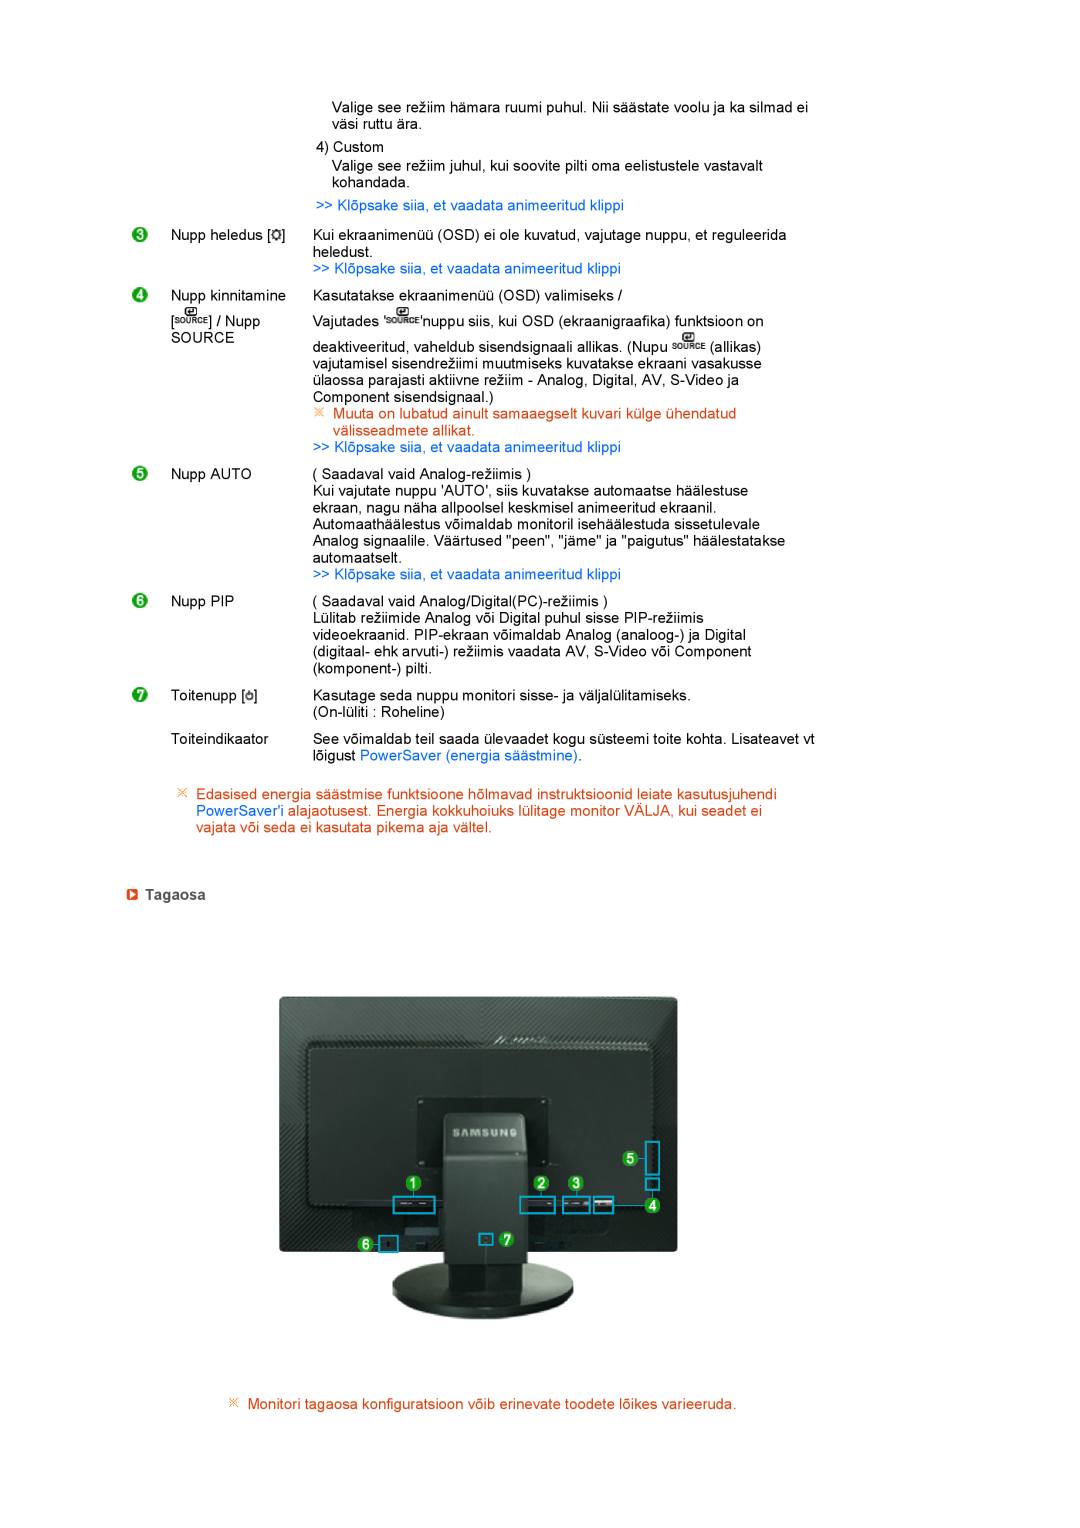 Samsung LS27HUBCB/EDC manual Klõpsake siia, et vaadata animeeritud klippi, lõigust PowerSaver energia säästmine, Tagaosa 